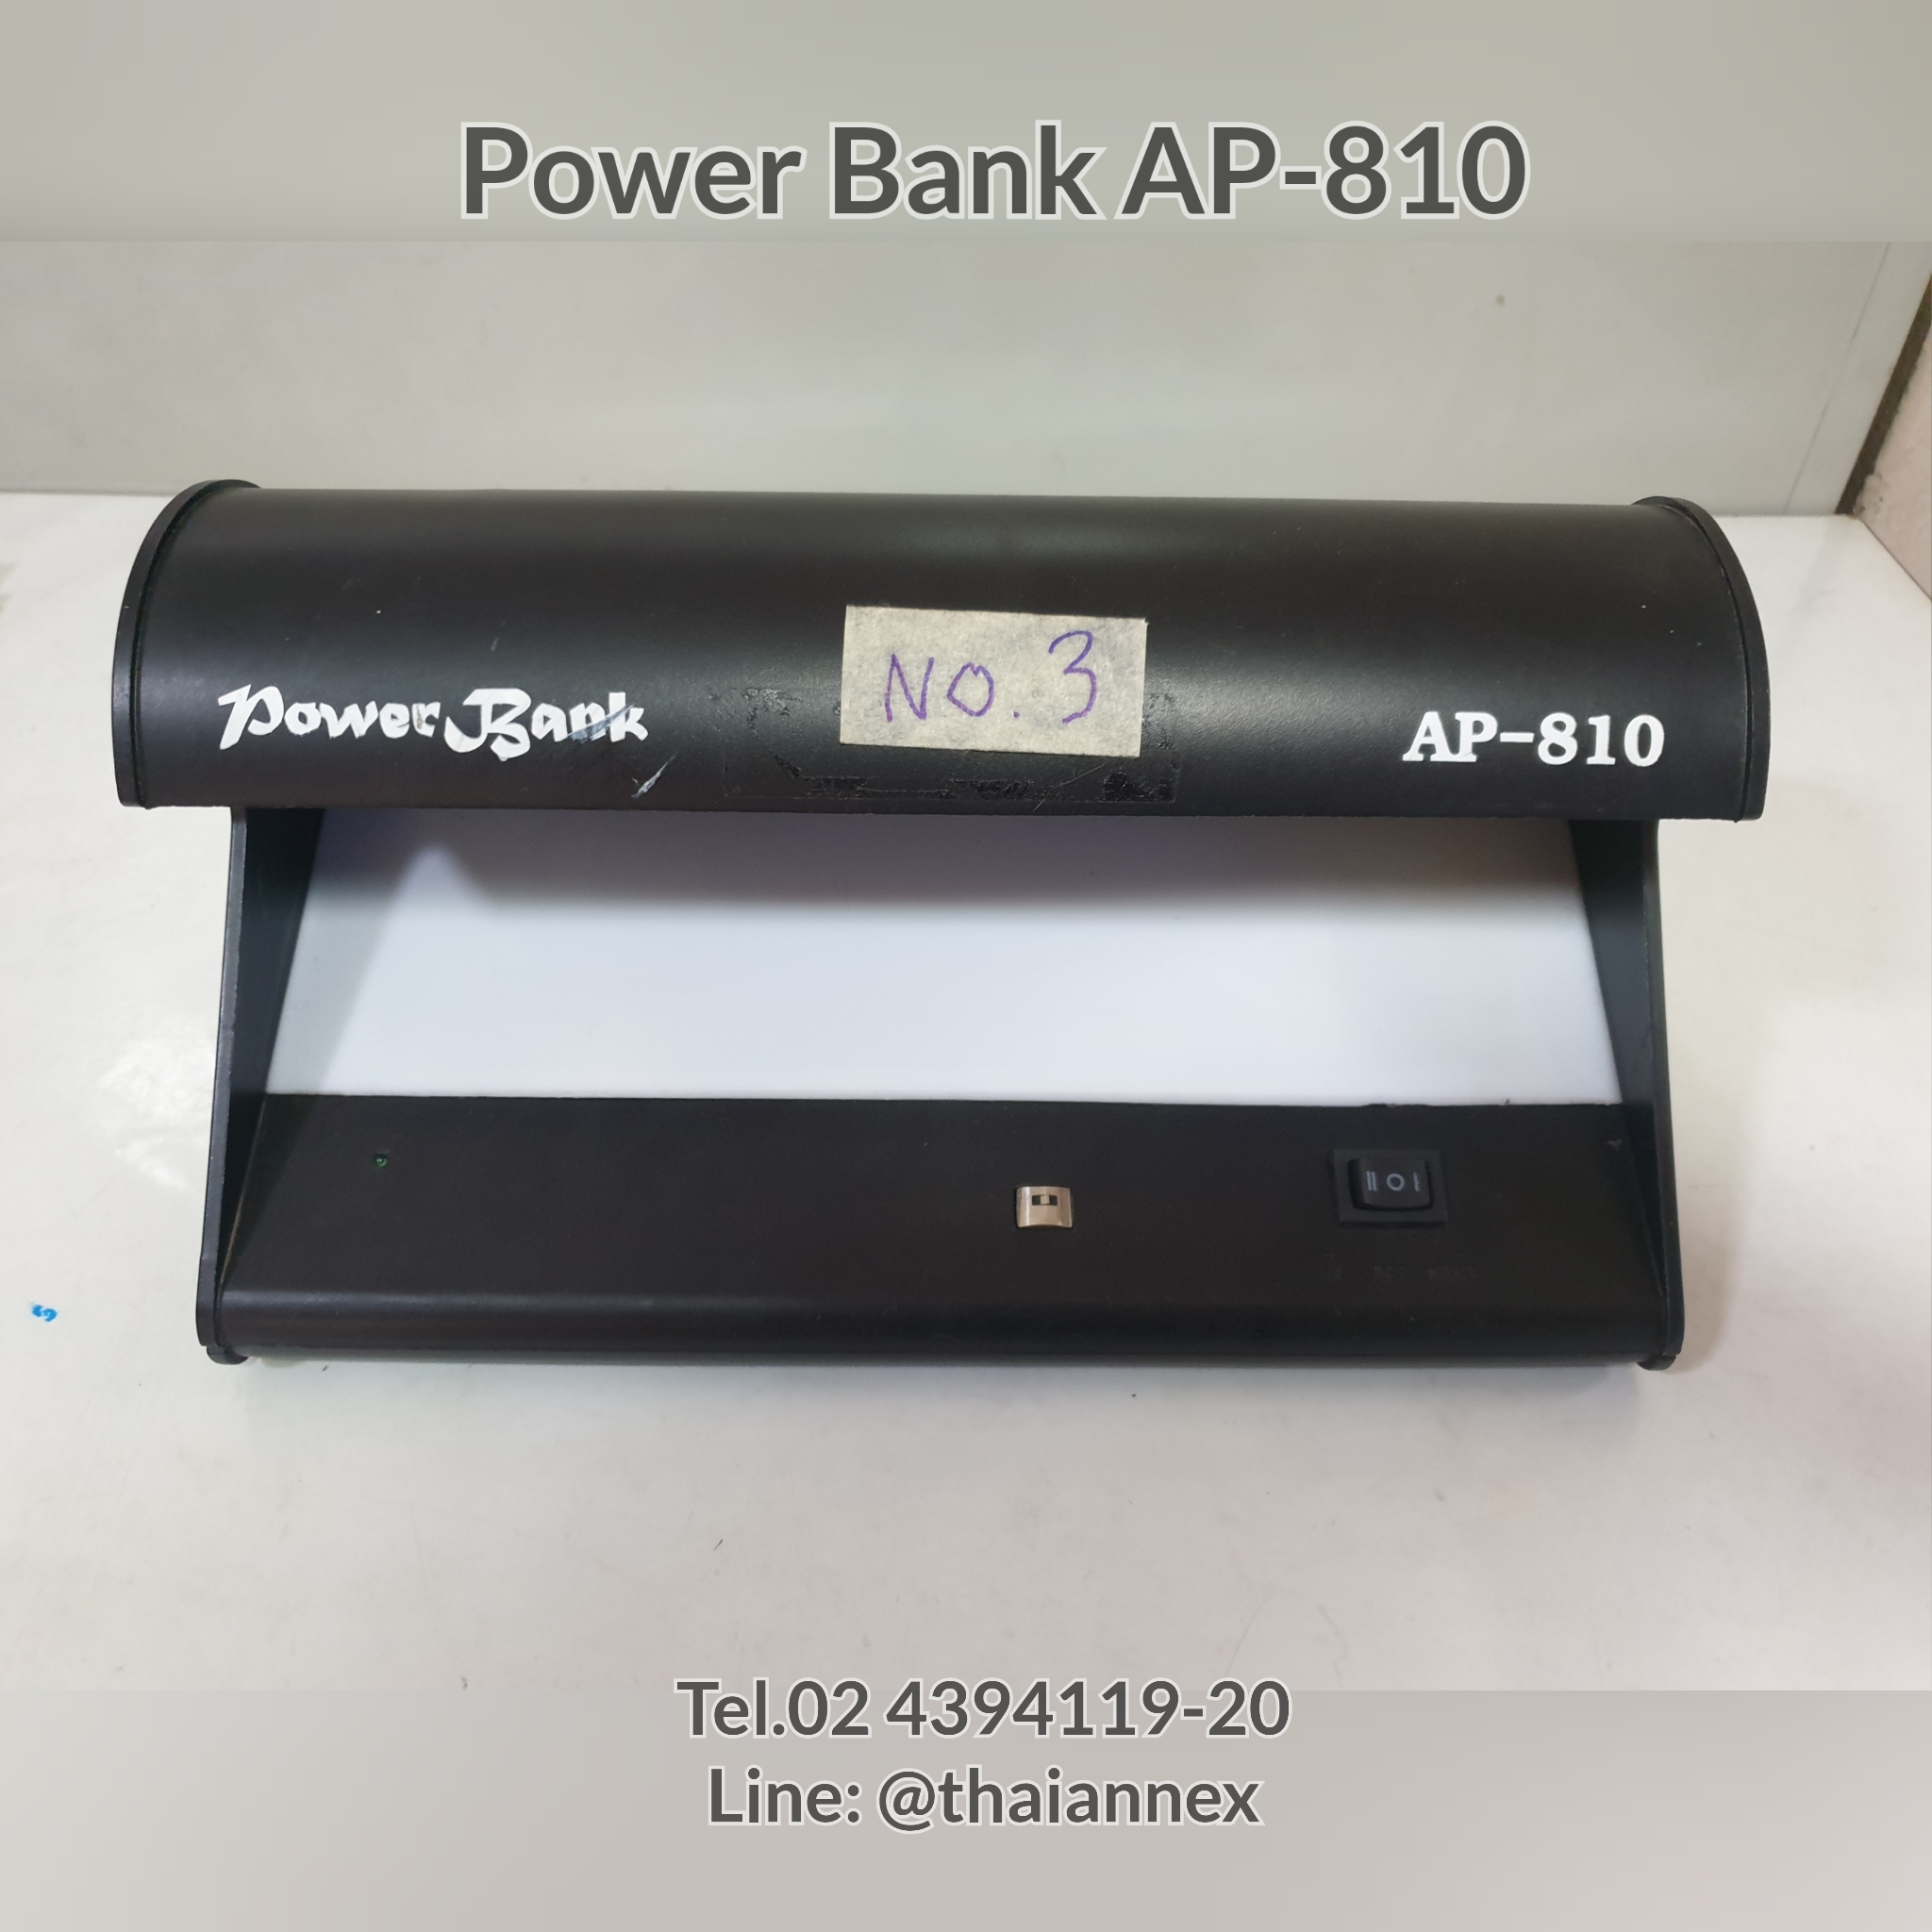 เครื่องตรวจธนบัตร Power Bank AP-810 (เครื่องที่ 3)